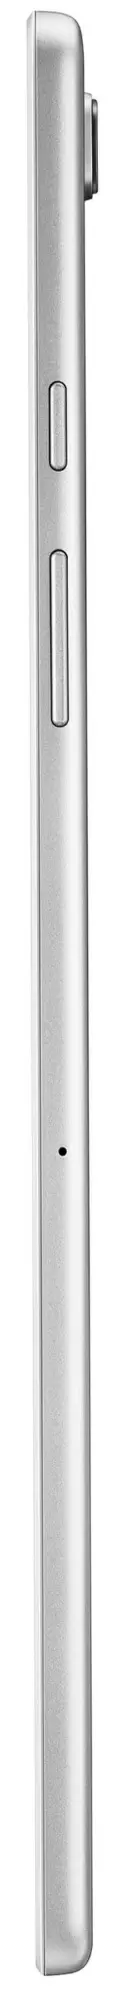 Tabletă Samsung Galaxy Tab A7 10.4 LTE, argintiu